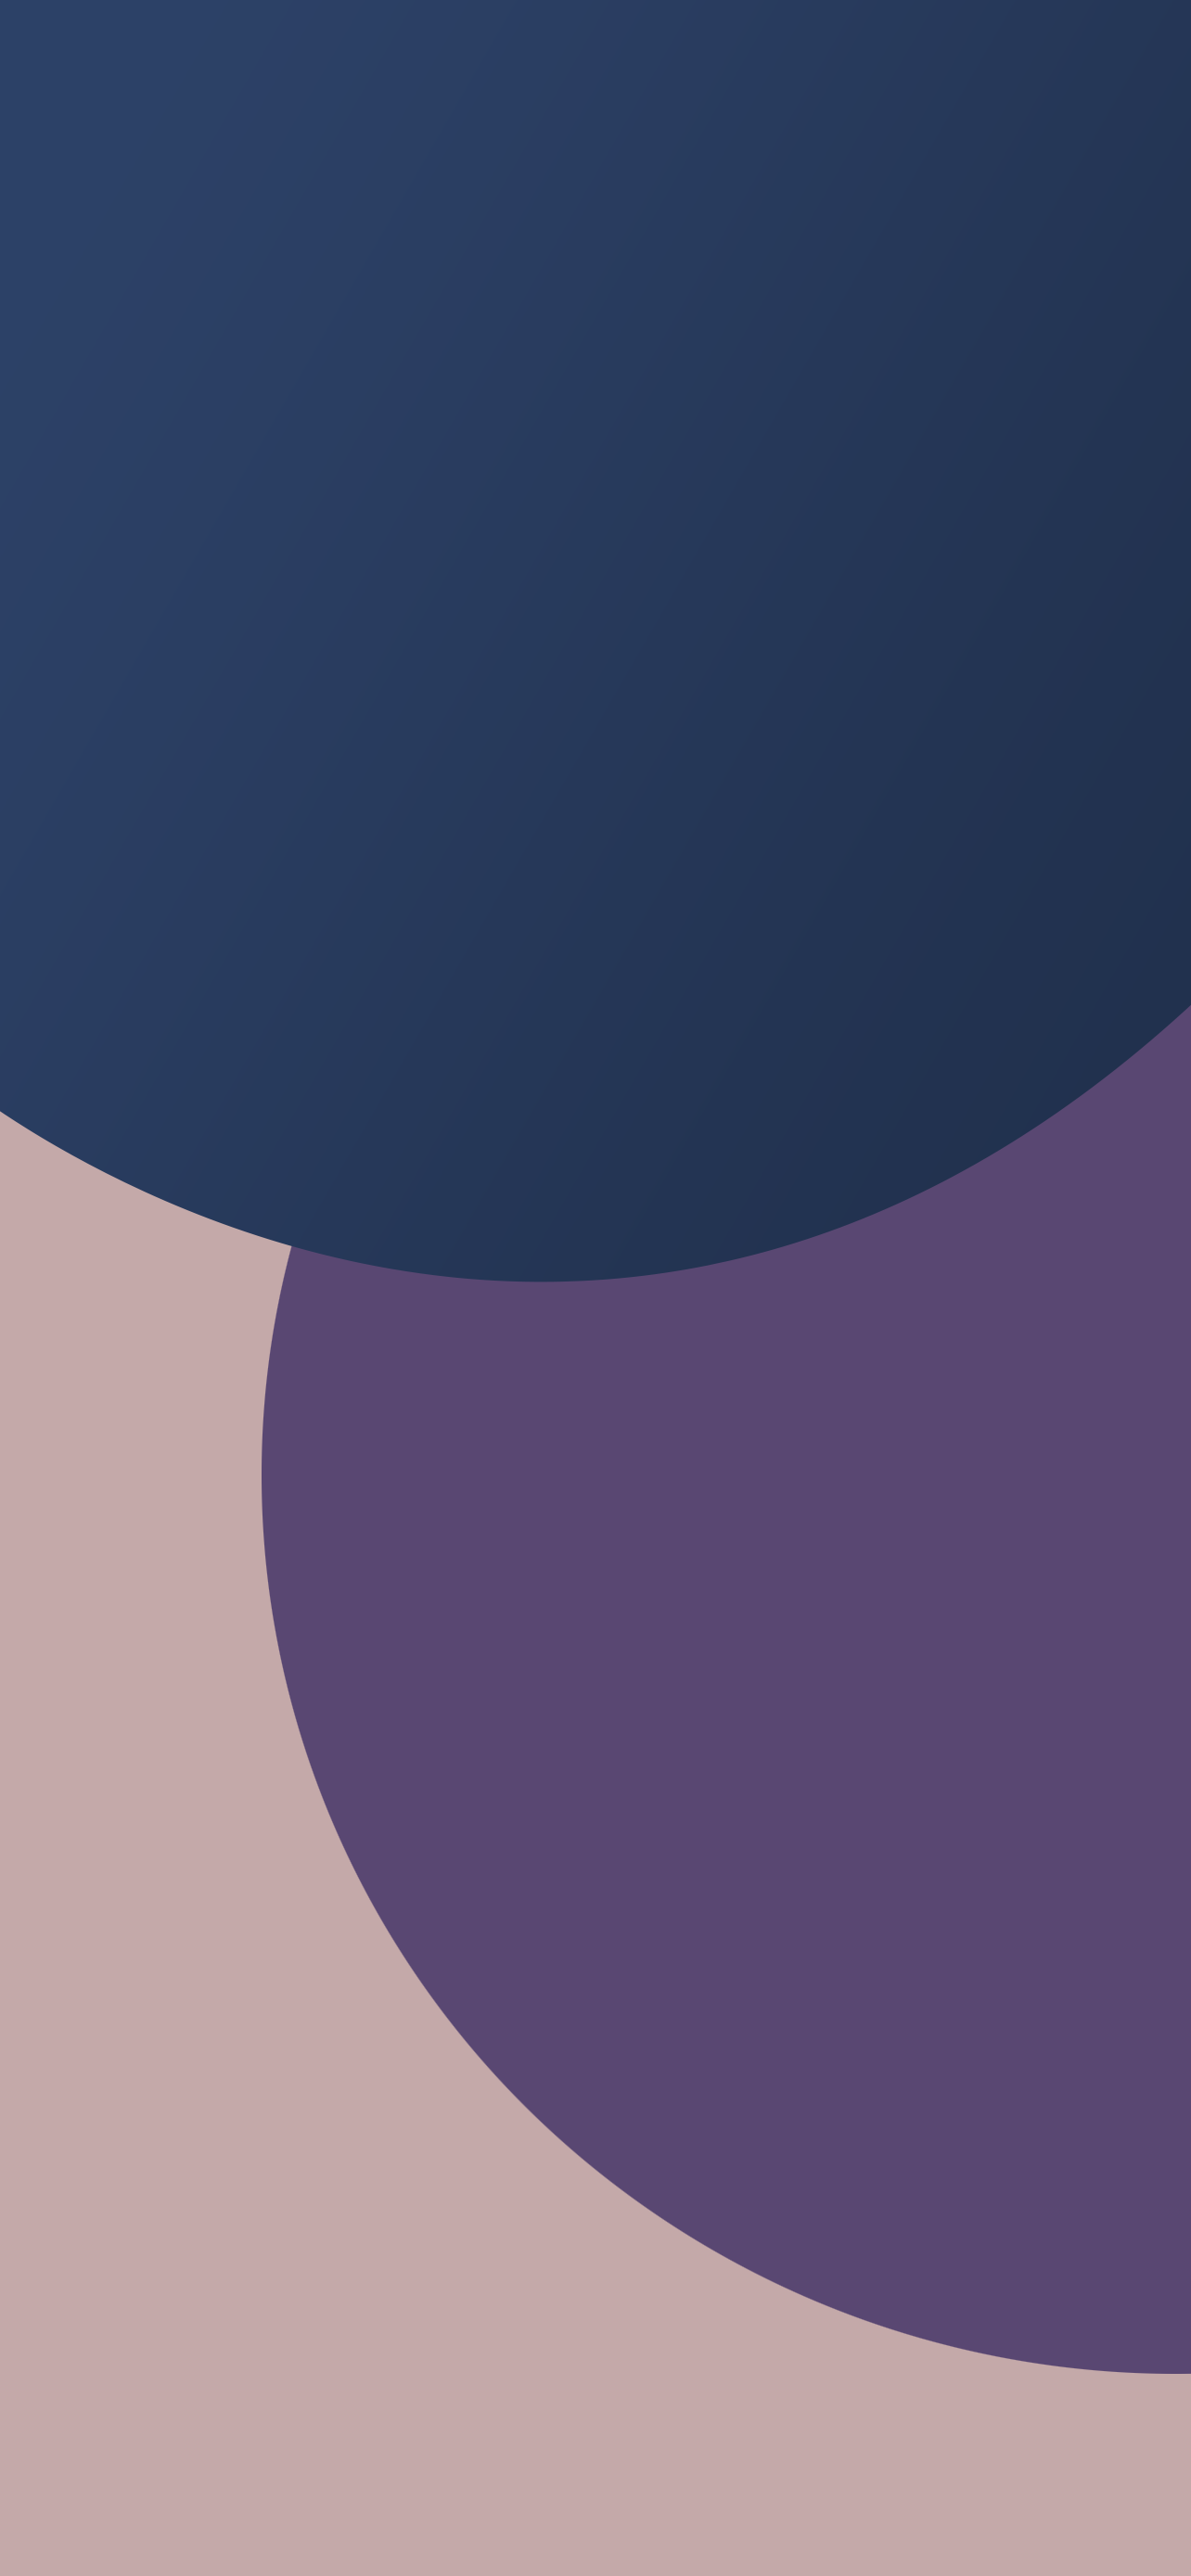 Chào mừng đến với thế giới của màu tím thanh lịch và quý phái! Những hình nền purple minimal này sẽ khiến cho điện thoại của bạn trở nên độc đáo và thu hút hơn. Với sự kết hợp tinh tế giữa gam màu tím và thiết kế đơn giản, bạn sẽ không thể cưỡng lại được sức hấp dẫn của chúng.